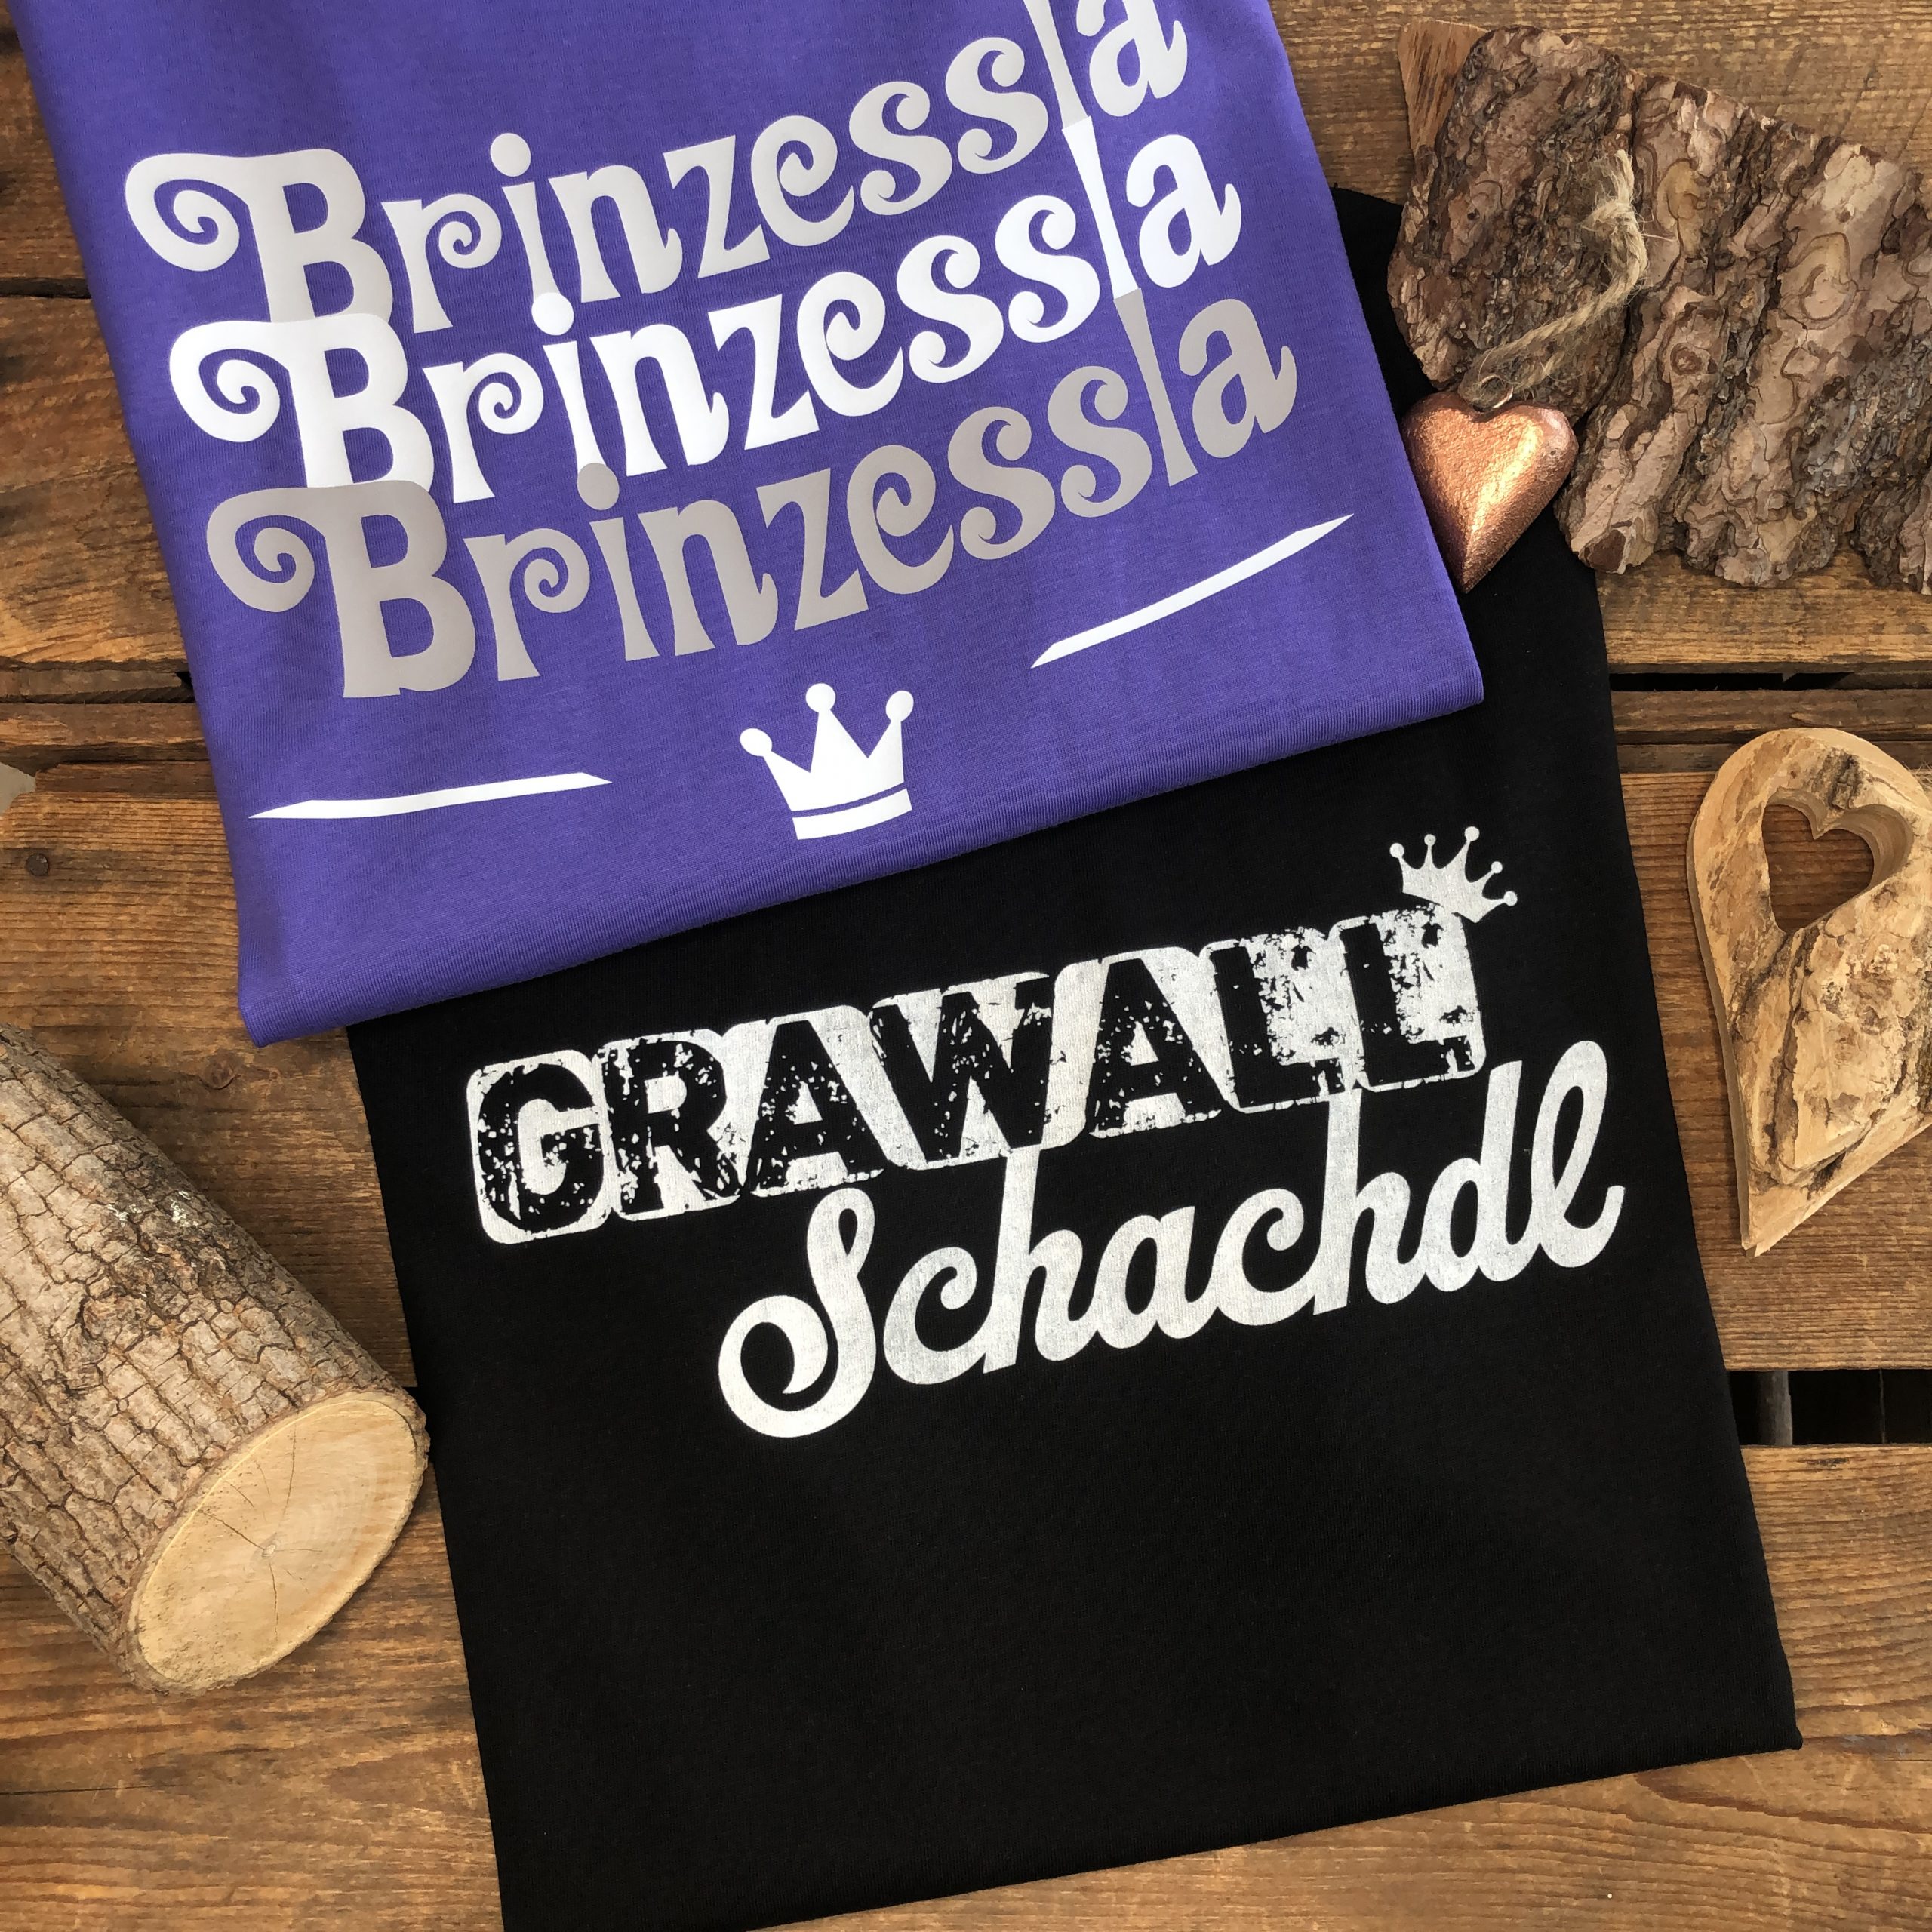 Frankenstyle T-Shirts Grawallschachdl